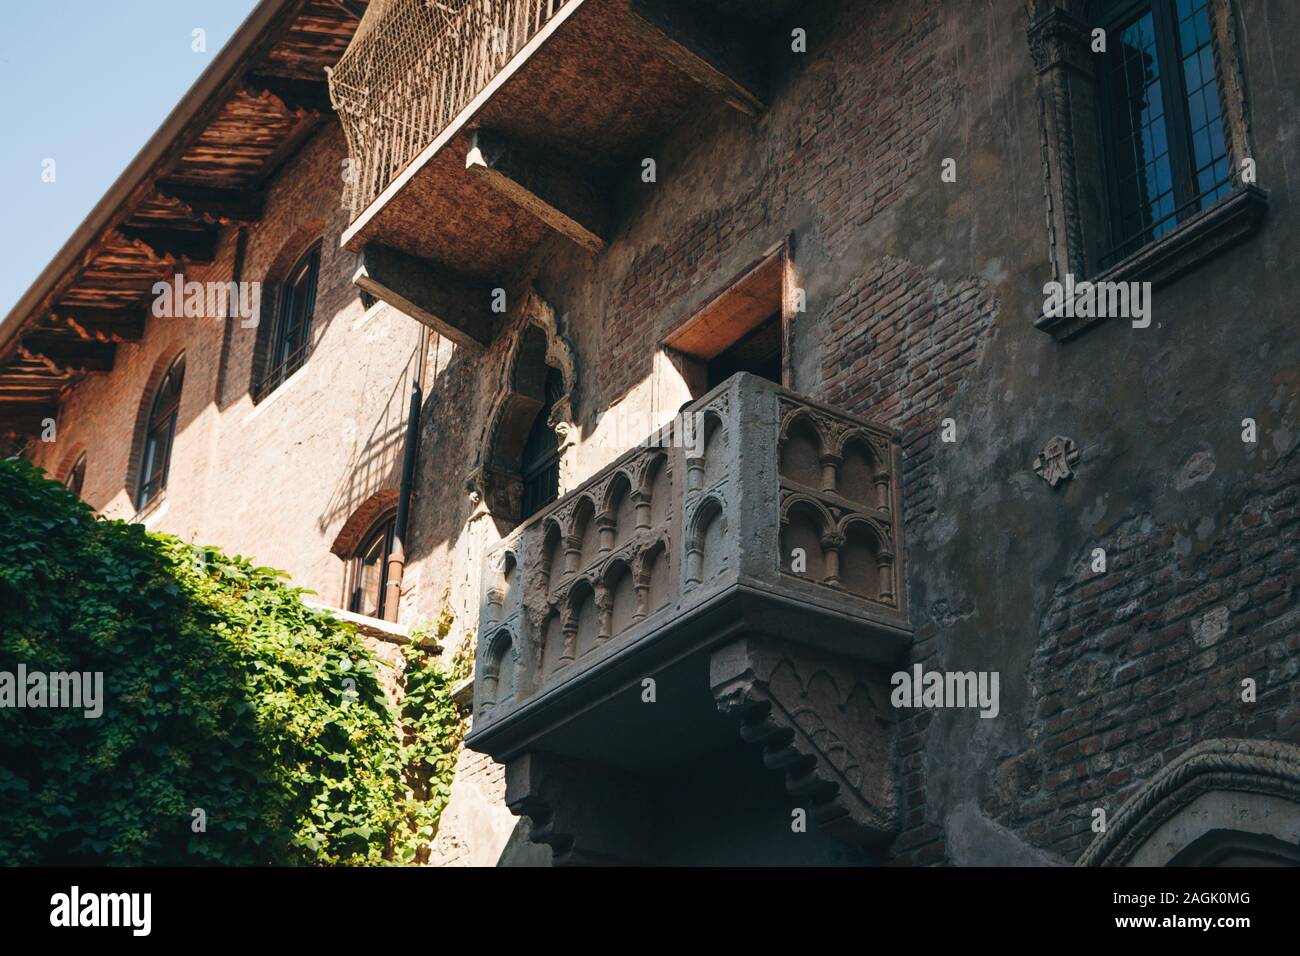 Balkon Von Romeo Und Julia In Verona In Italien Eine Der Beruhmten Sehenswurdigkeiten Der Stadt Stockfotografie Alamy